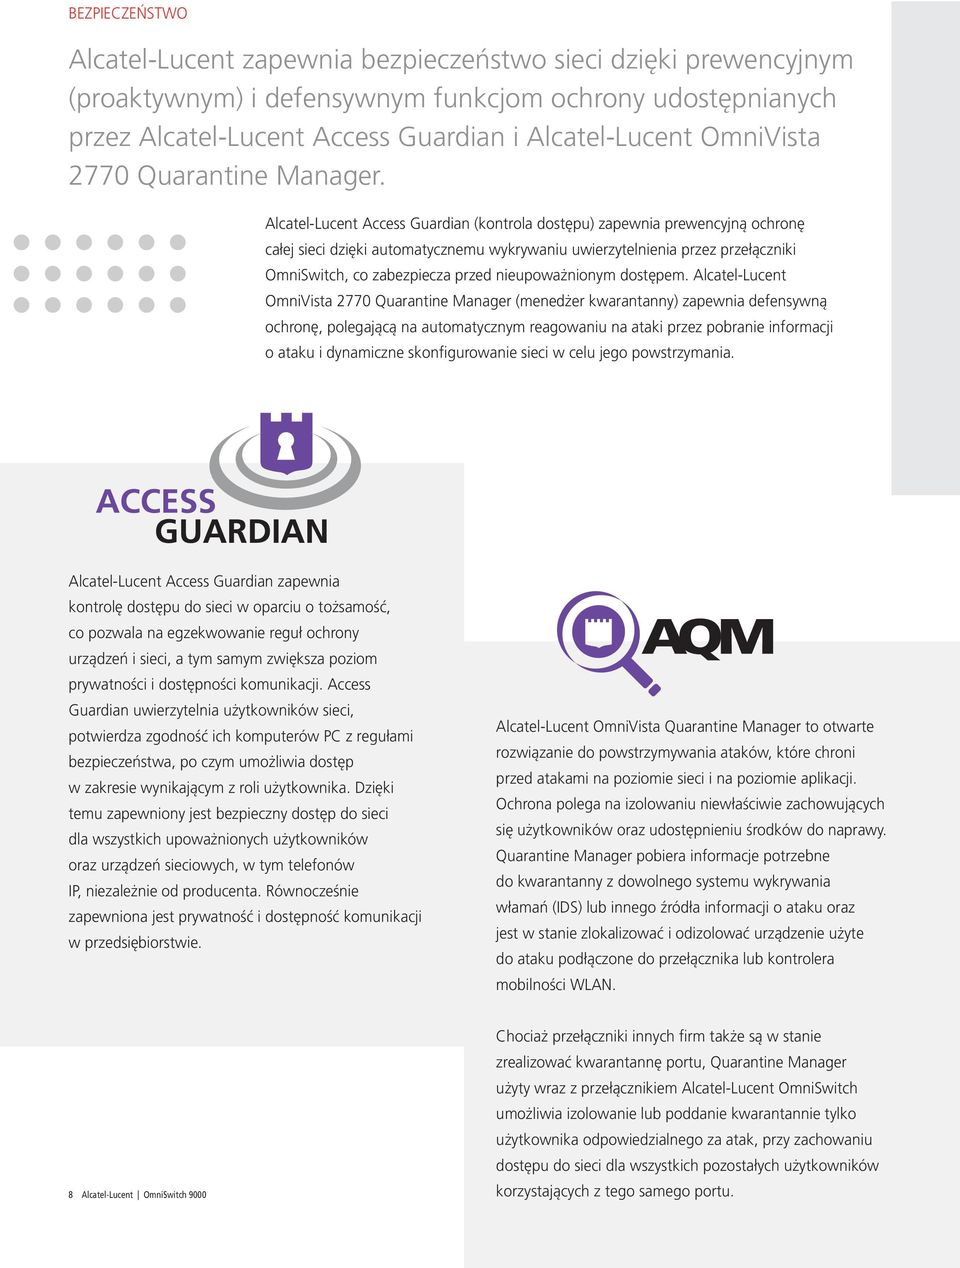 Alcatel-Lucent Access Guardian (kontrola dostępu) zapewnia prewencyjną ochronę całej sieci dzięki automatycznemu wykrywaniu uwierzytelnienia przez przełączniki OmniSwitch, co zabezpiecza przed